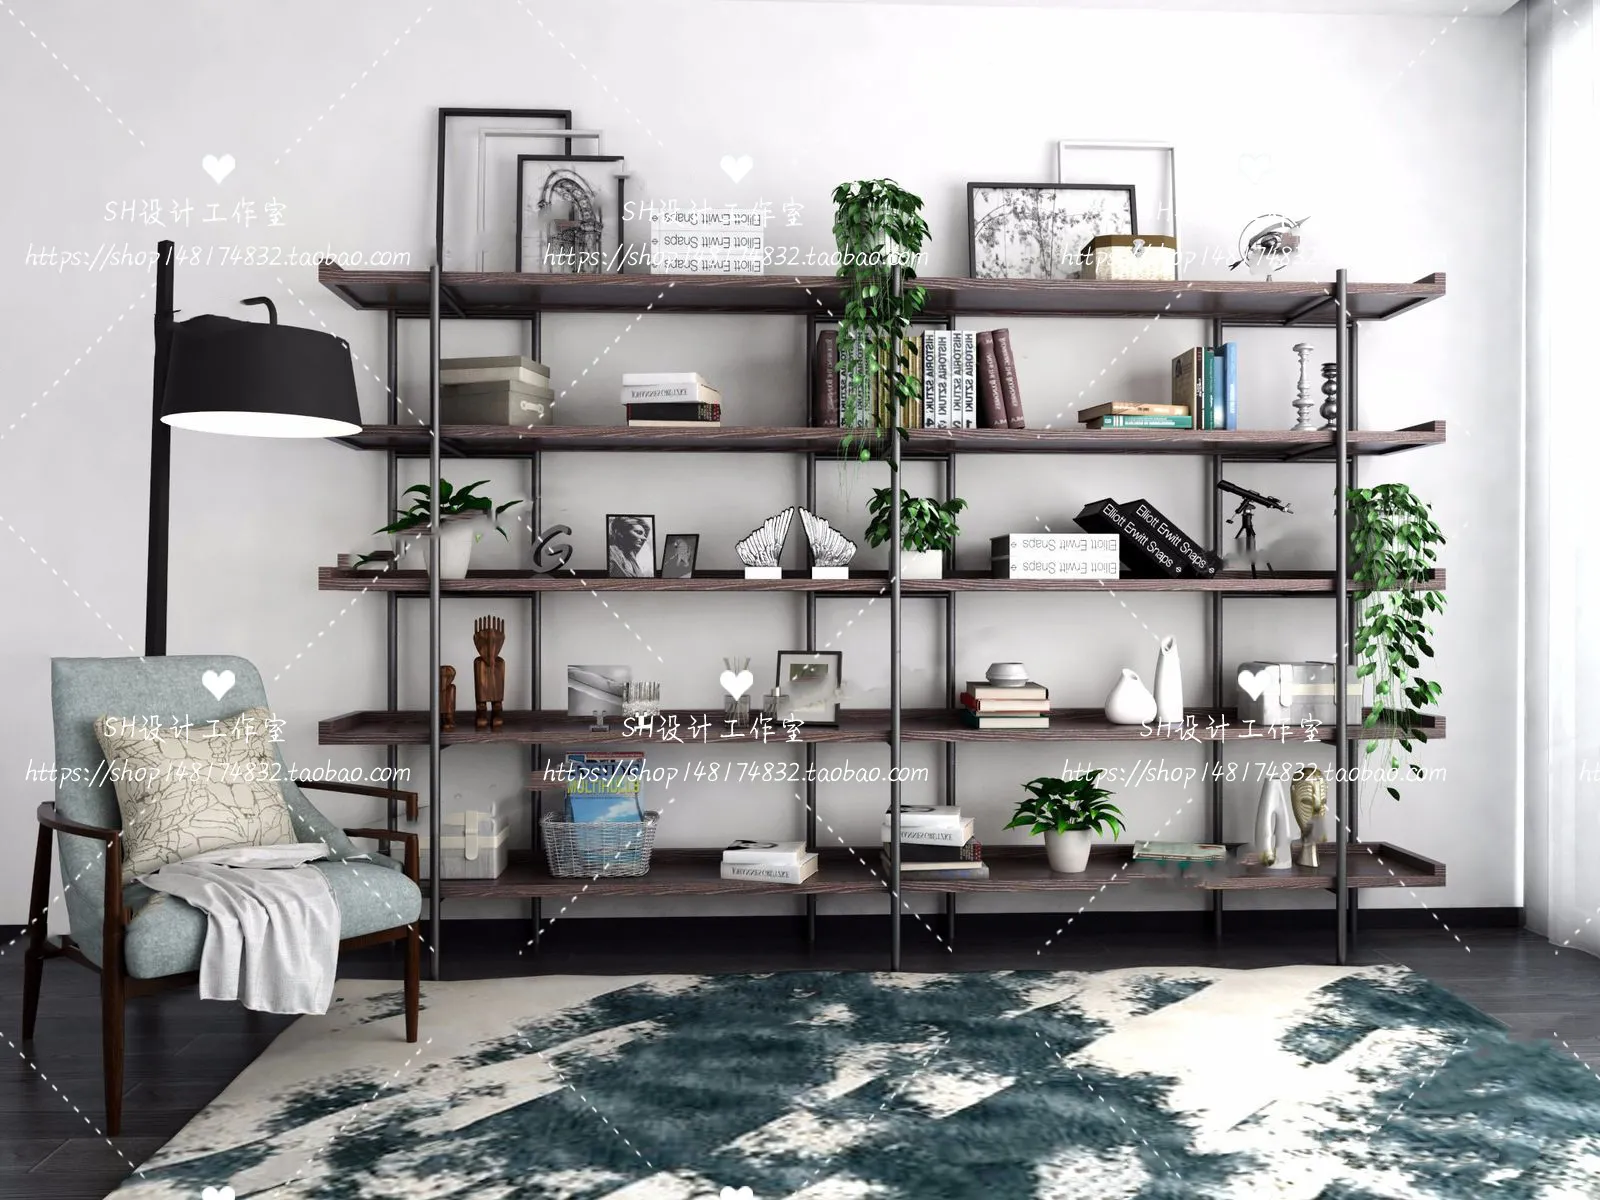 Decorative Cabinets – 3D Models – 0115